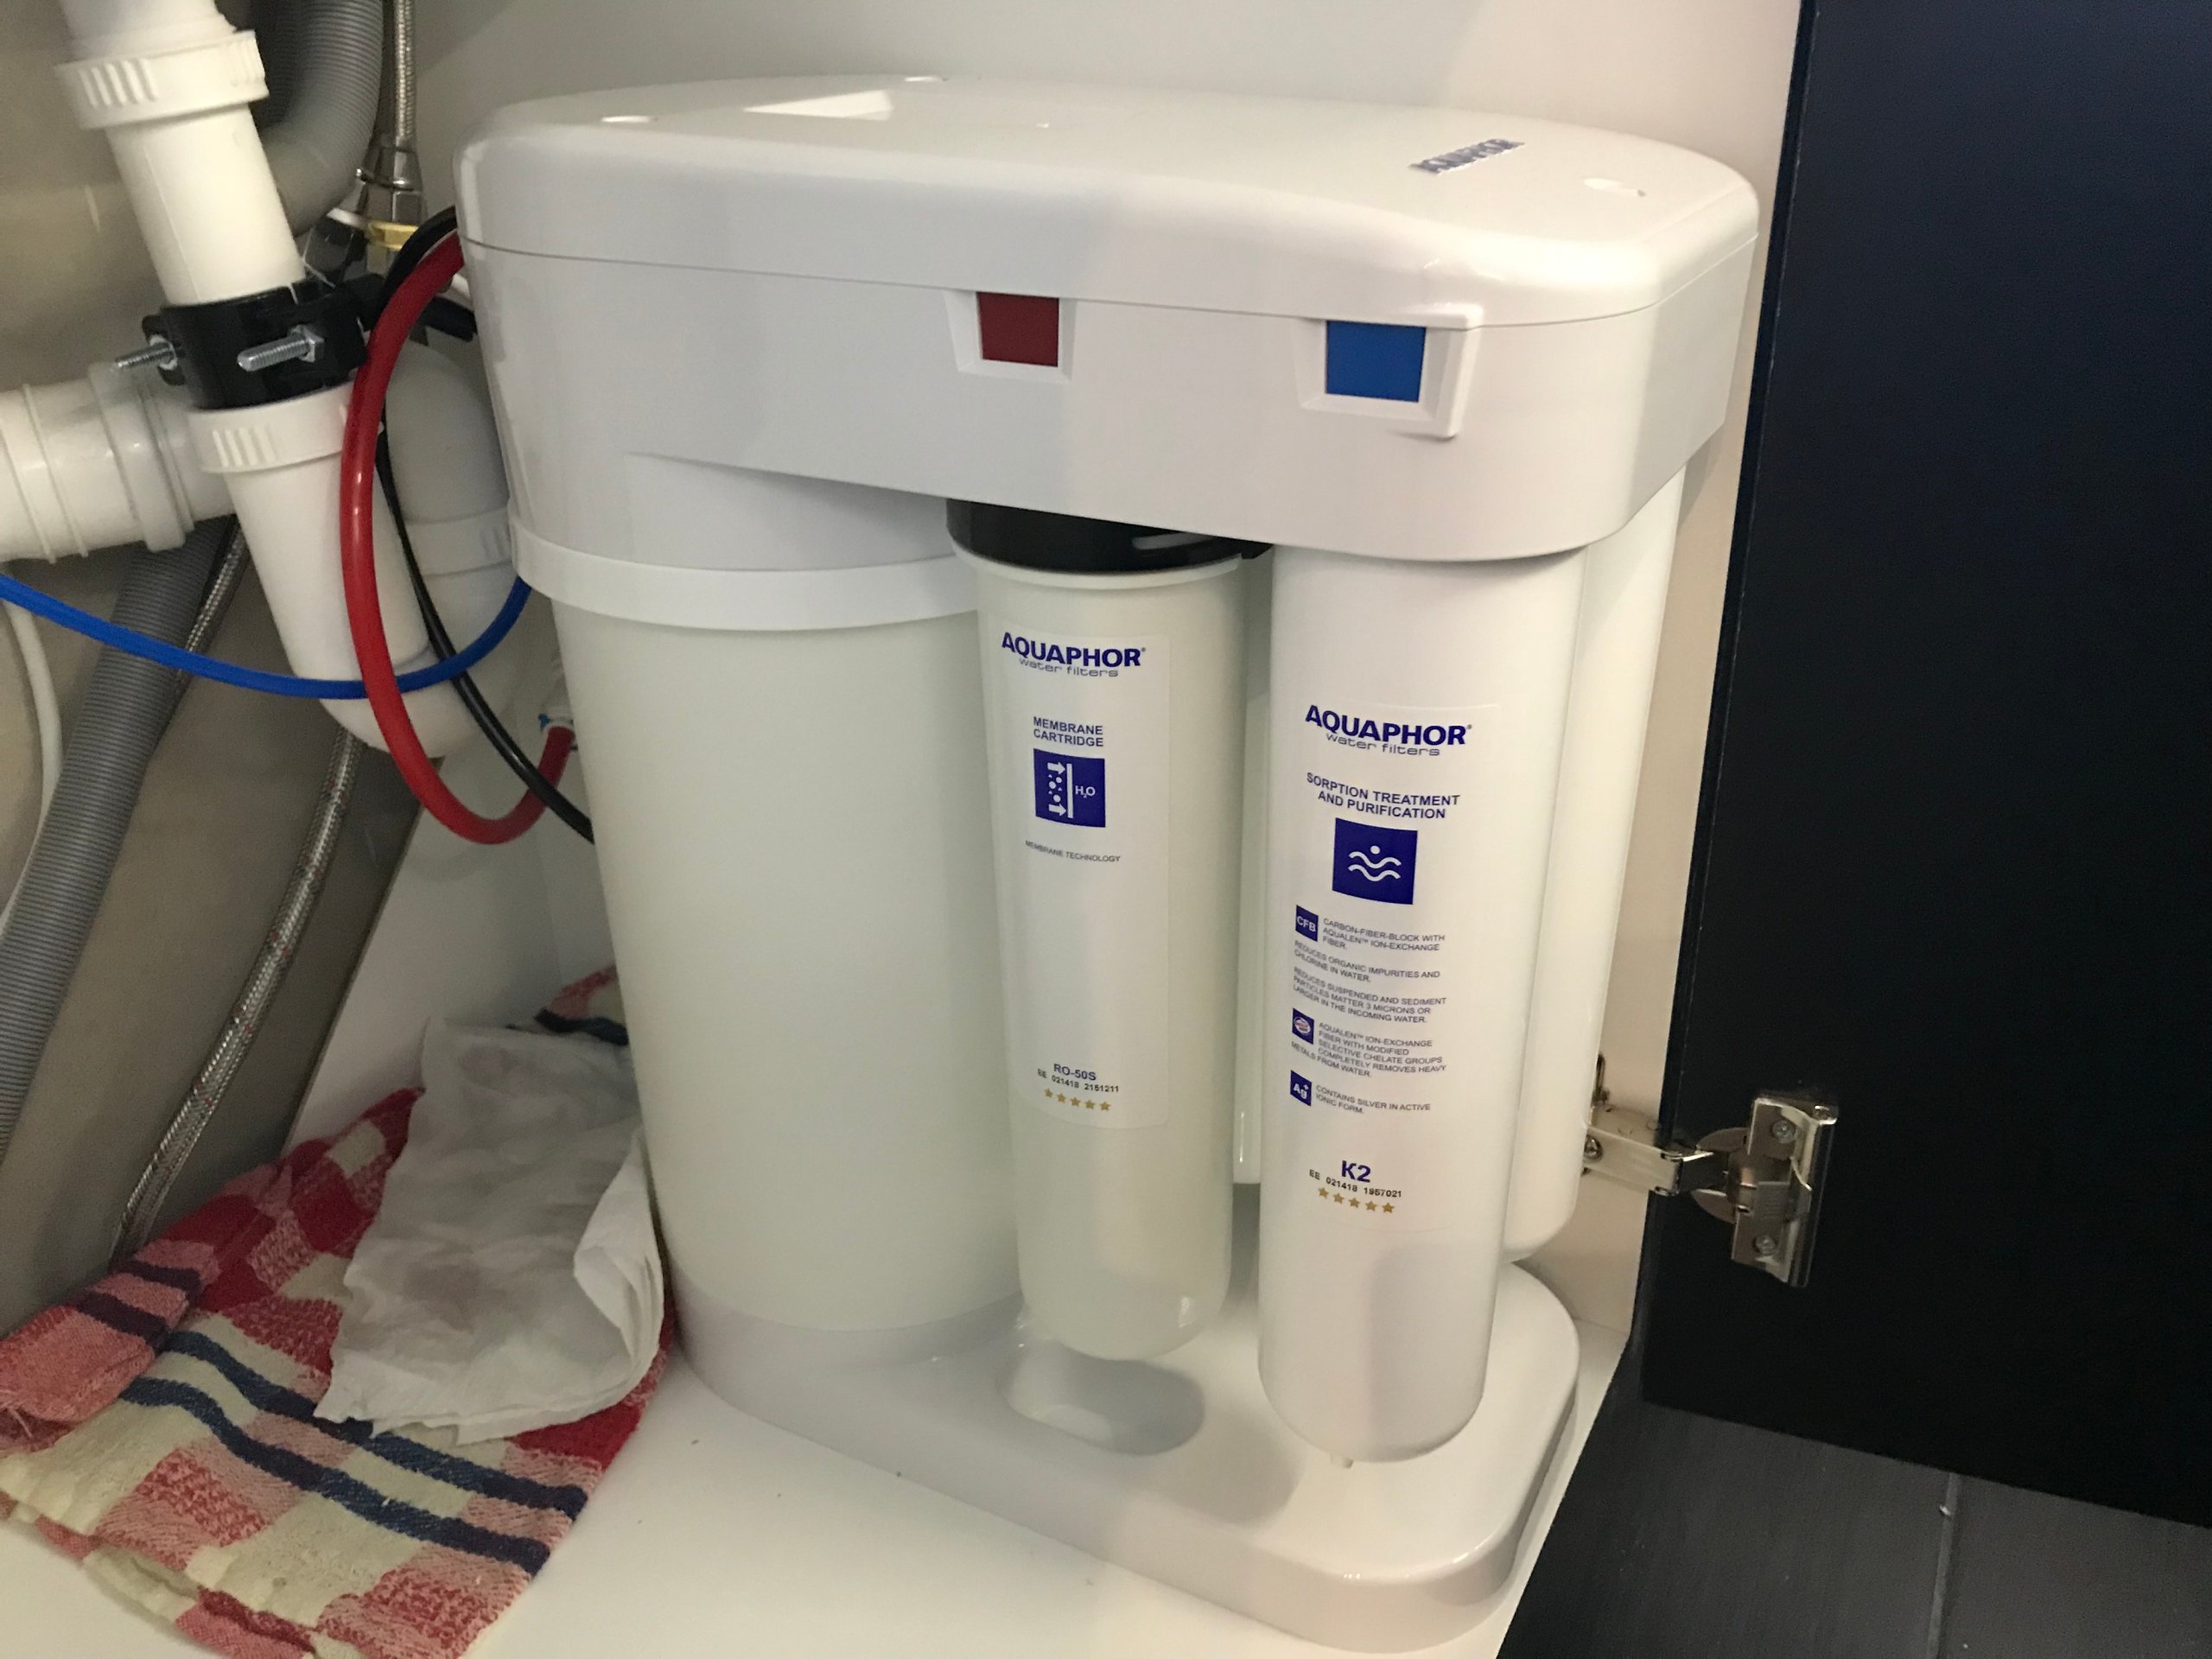 Аквафор фильтры для воды pro